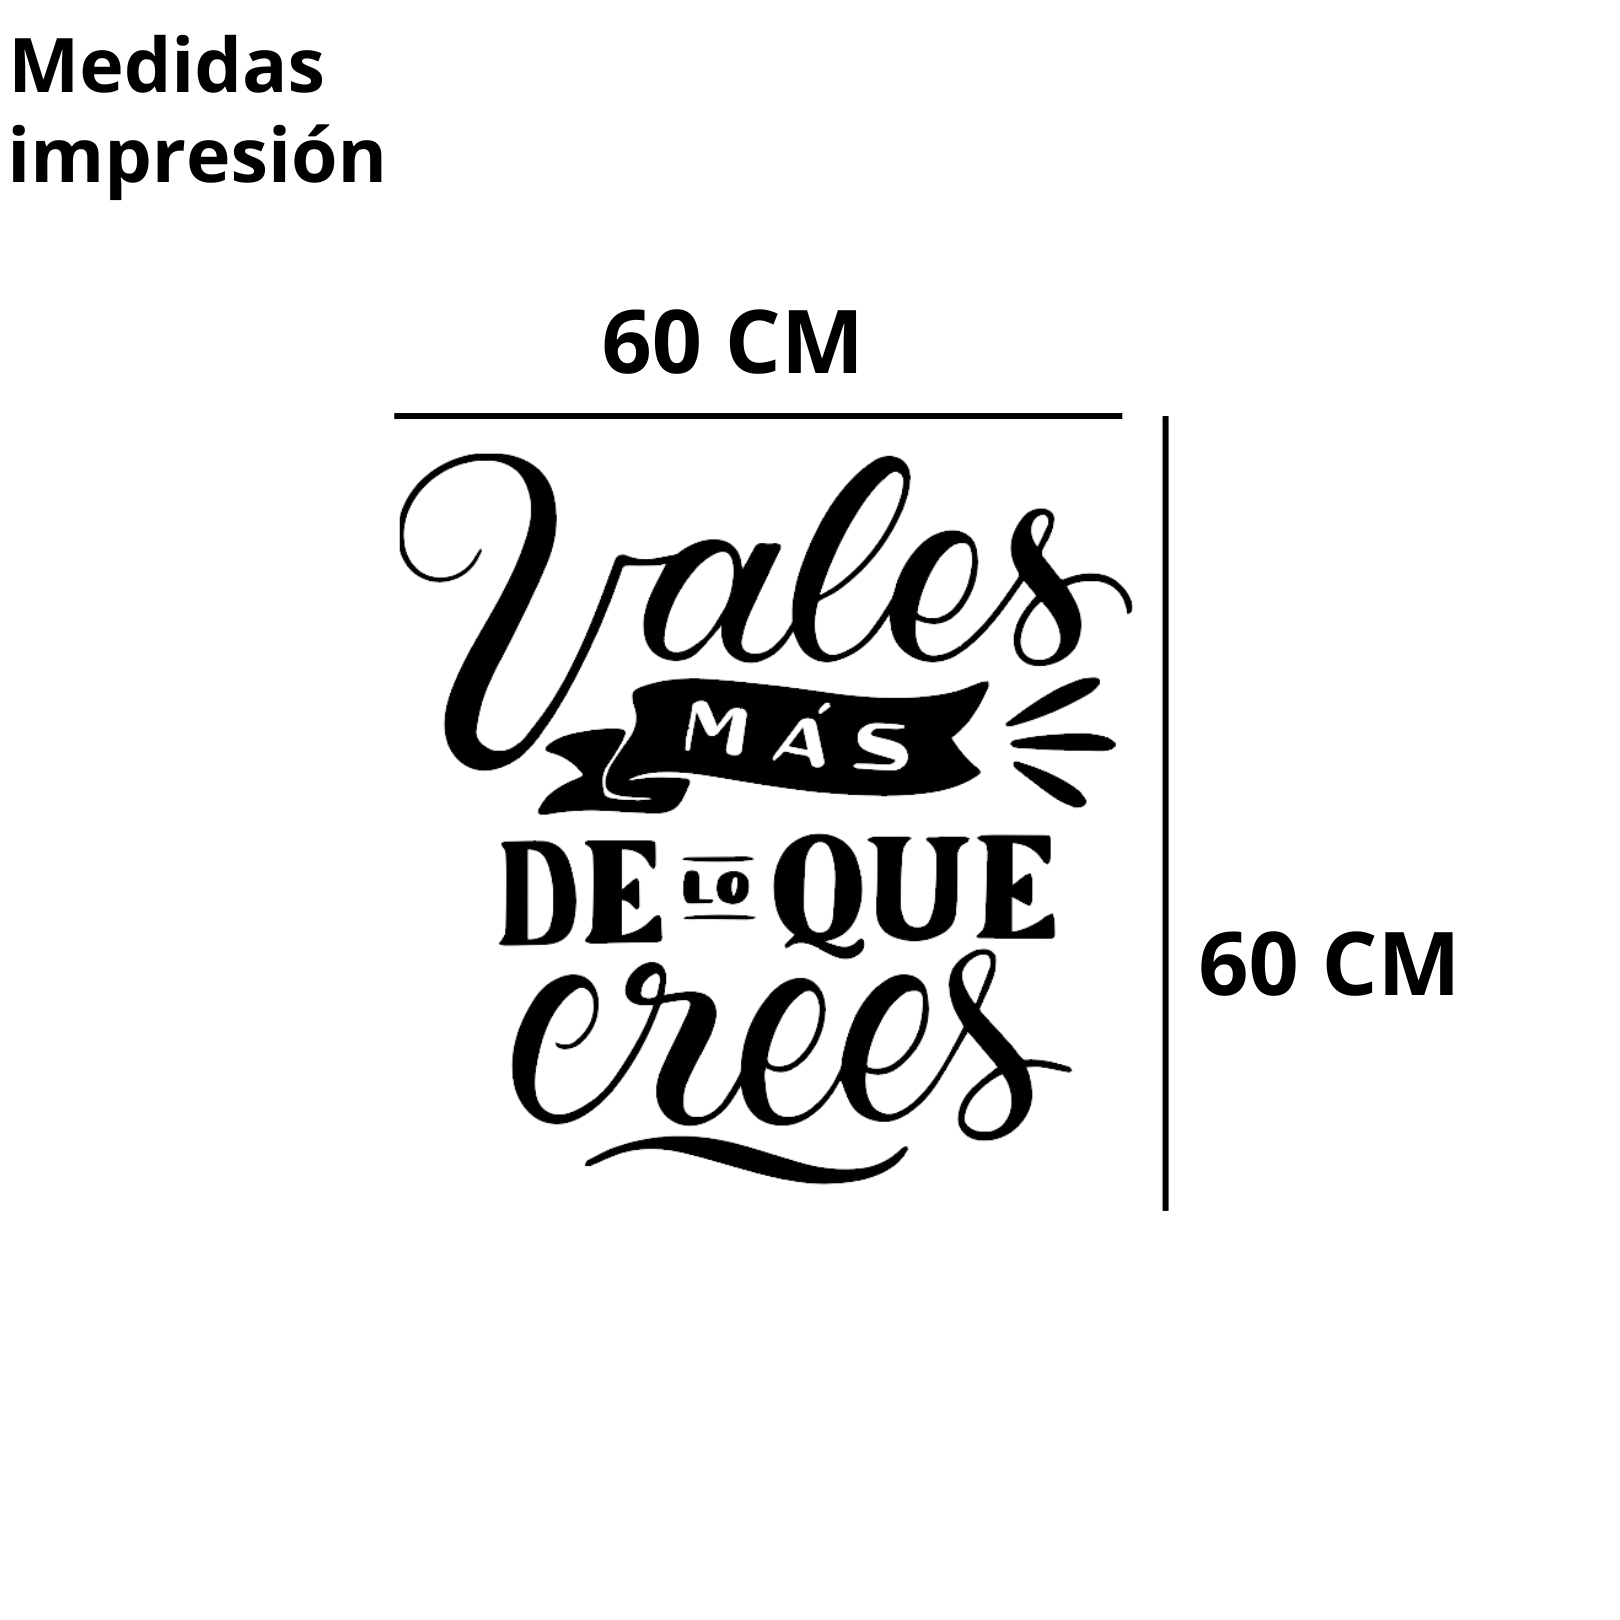 VINIL DECORATIVO VALES MAS DE LO QUE CREES 60 X 60 CM